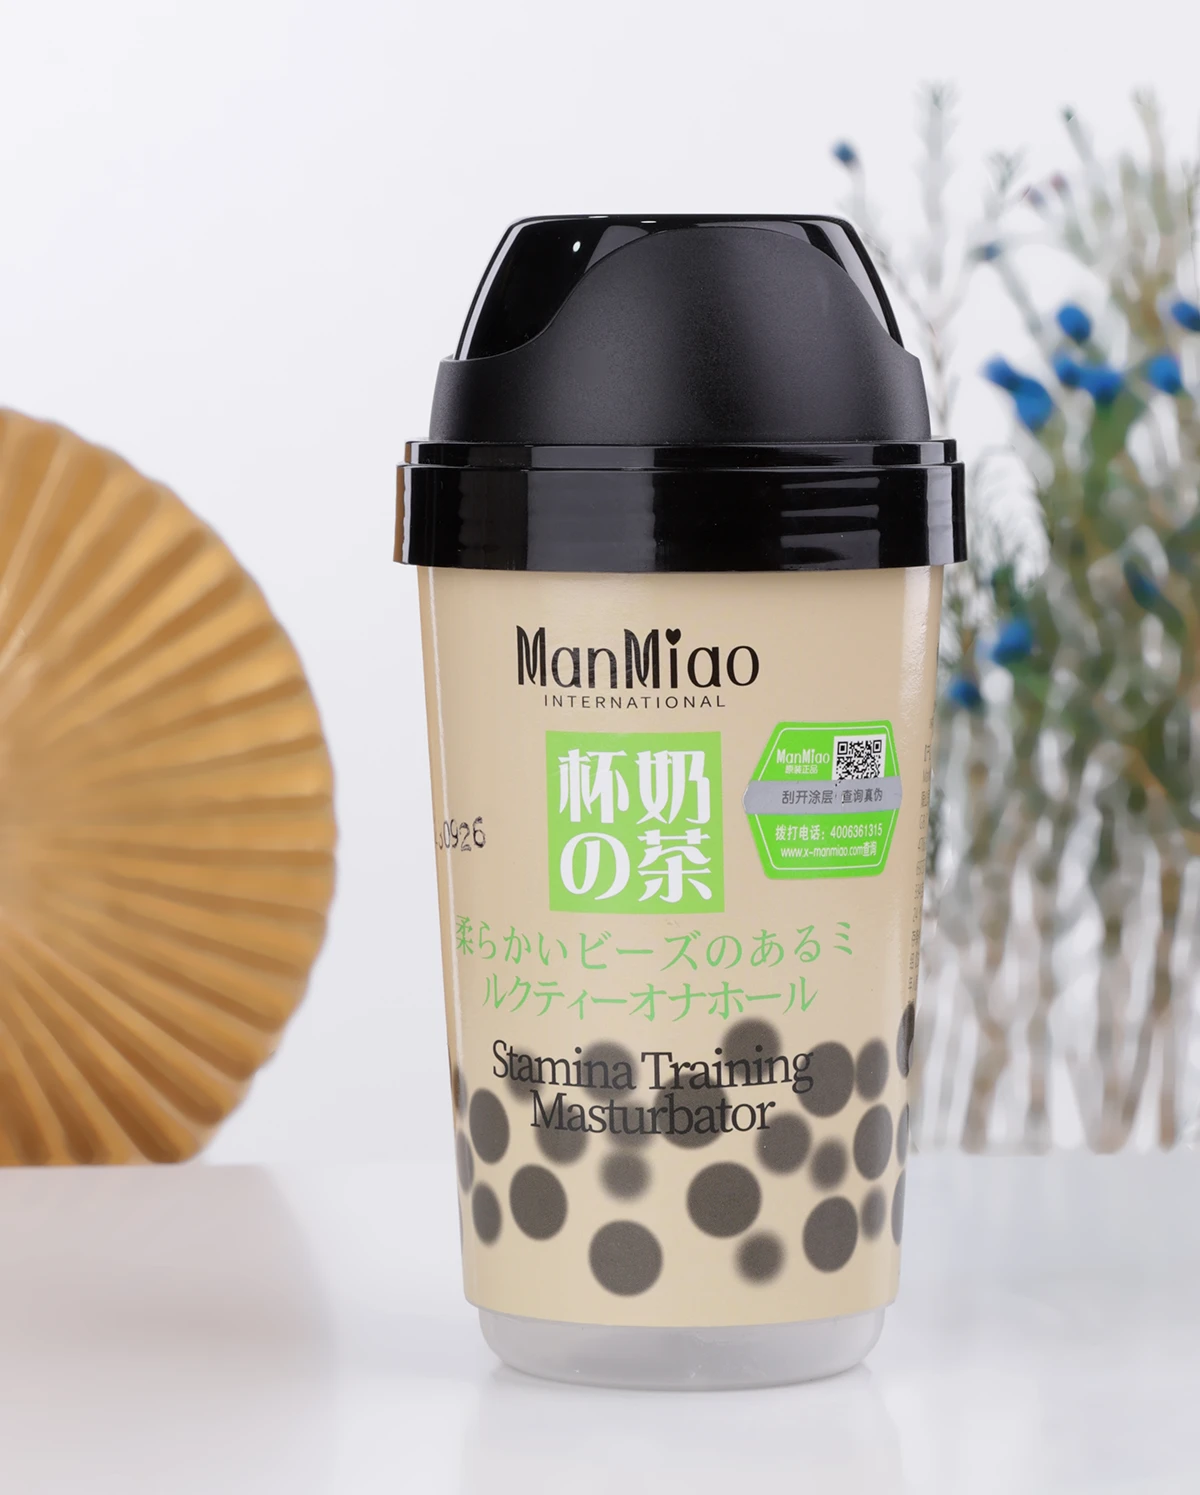  Phân phối Cốc thủ dâm Manmiao Stamina Training thiết kế nguỵ trang ly trà sữa có hạt trân châu mới nhất